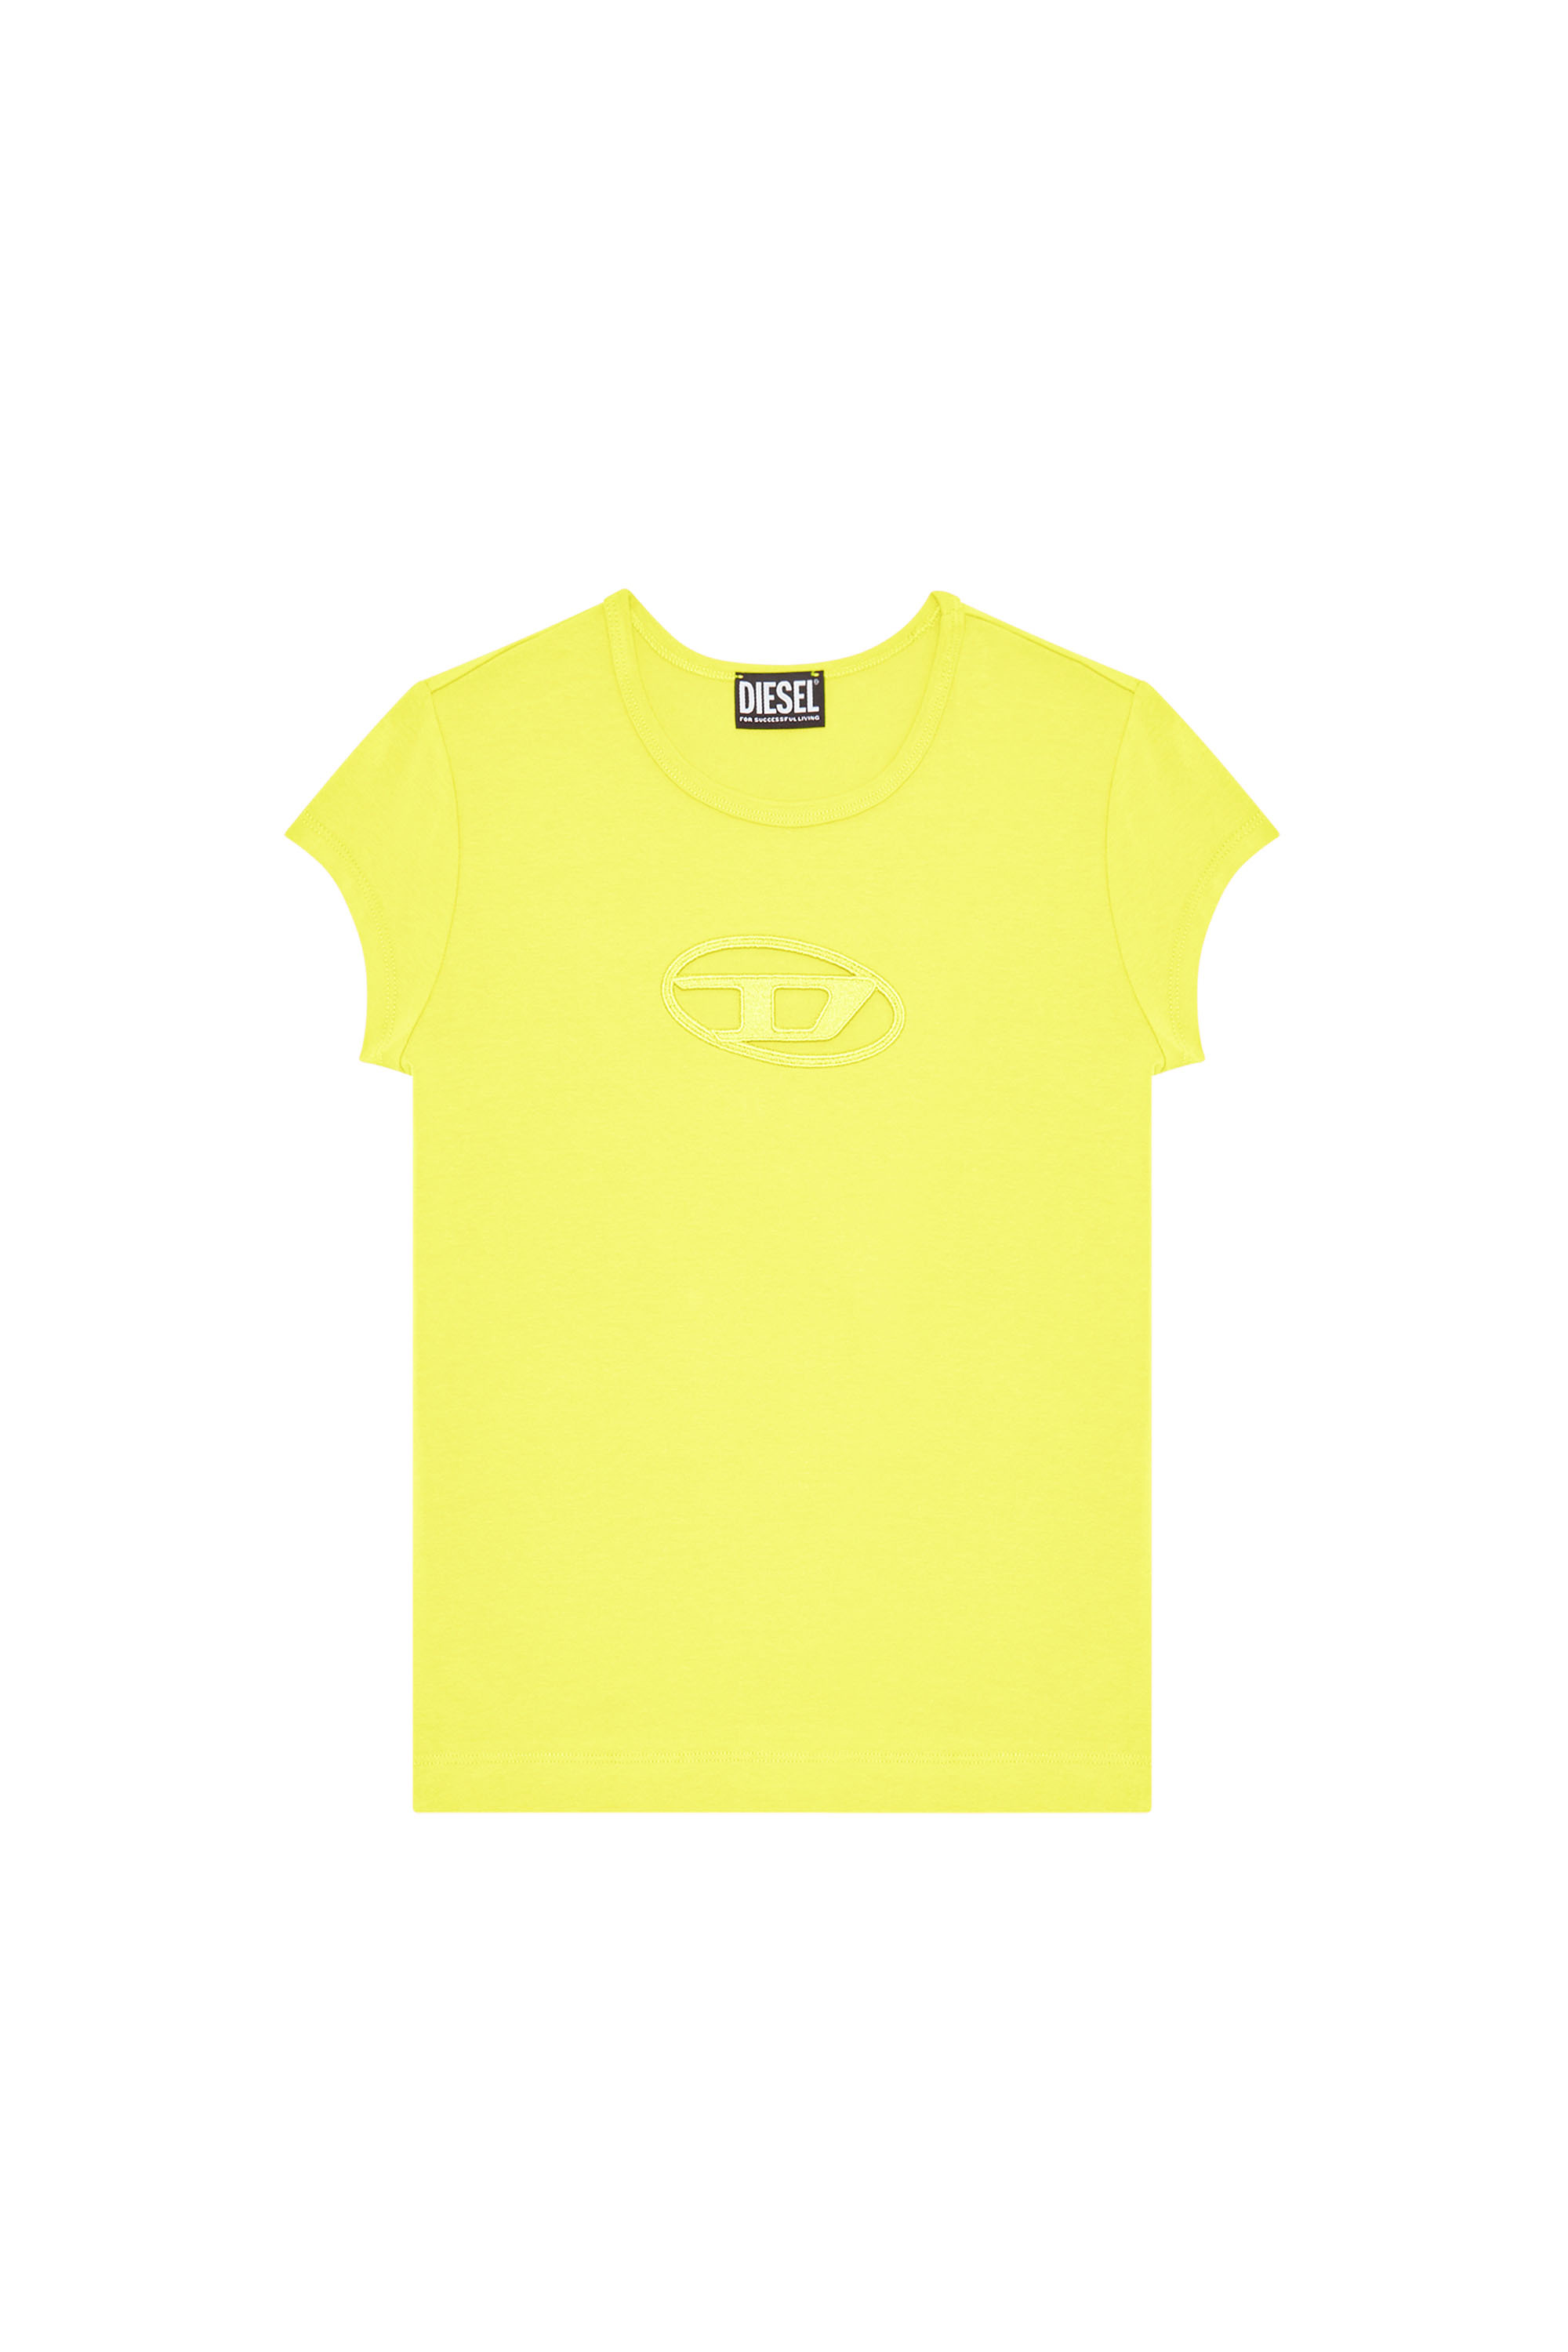 T-ANGIE, Yellow - T-Shirts